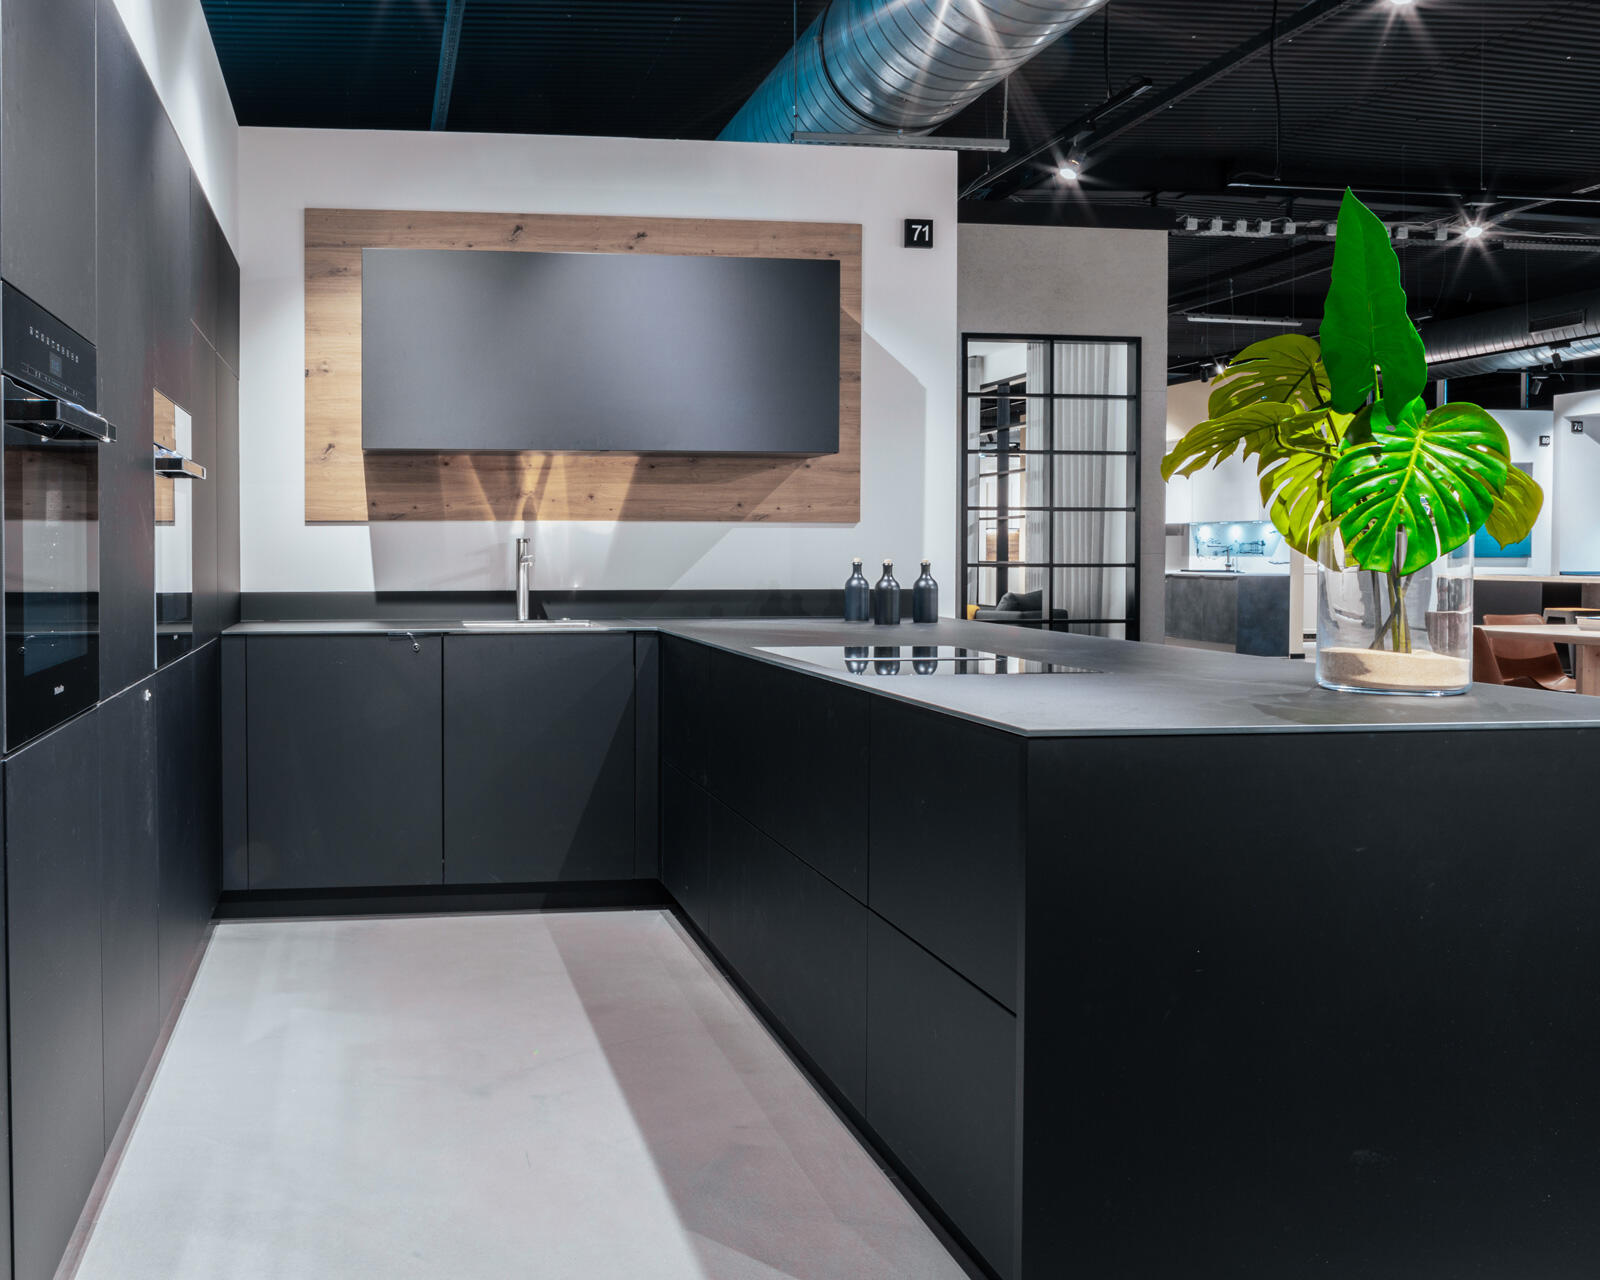 Kitchen studio Cologne, buy kitchen Cologne, modern kitchen studio